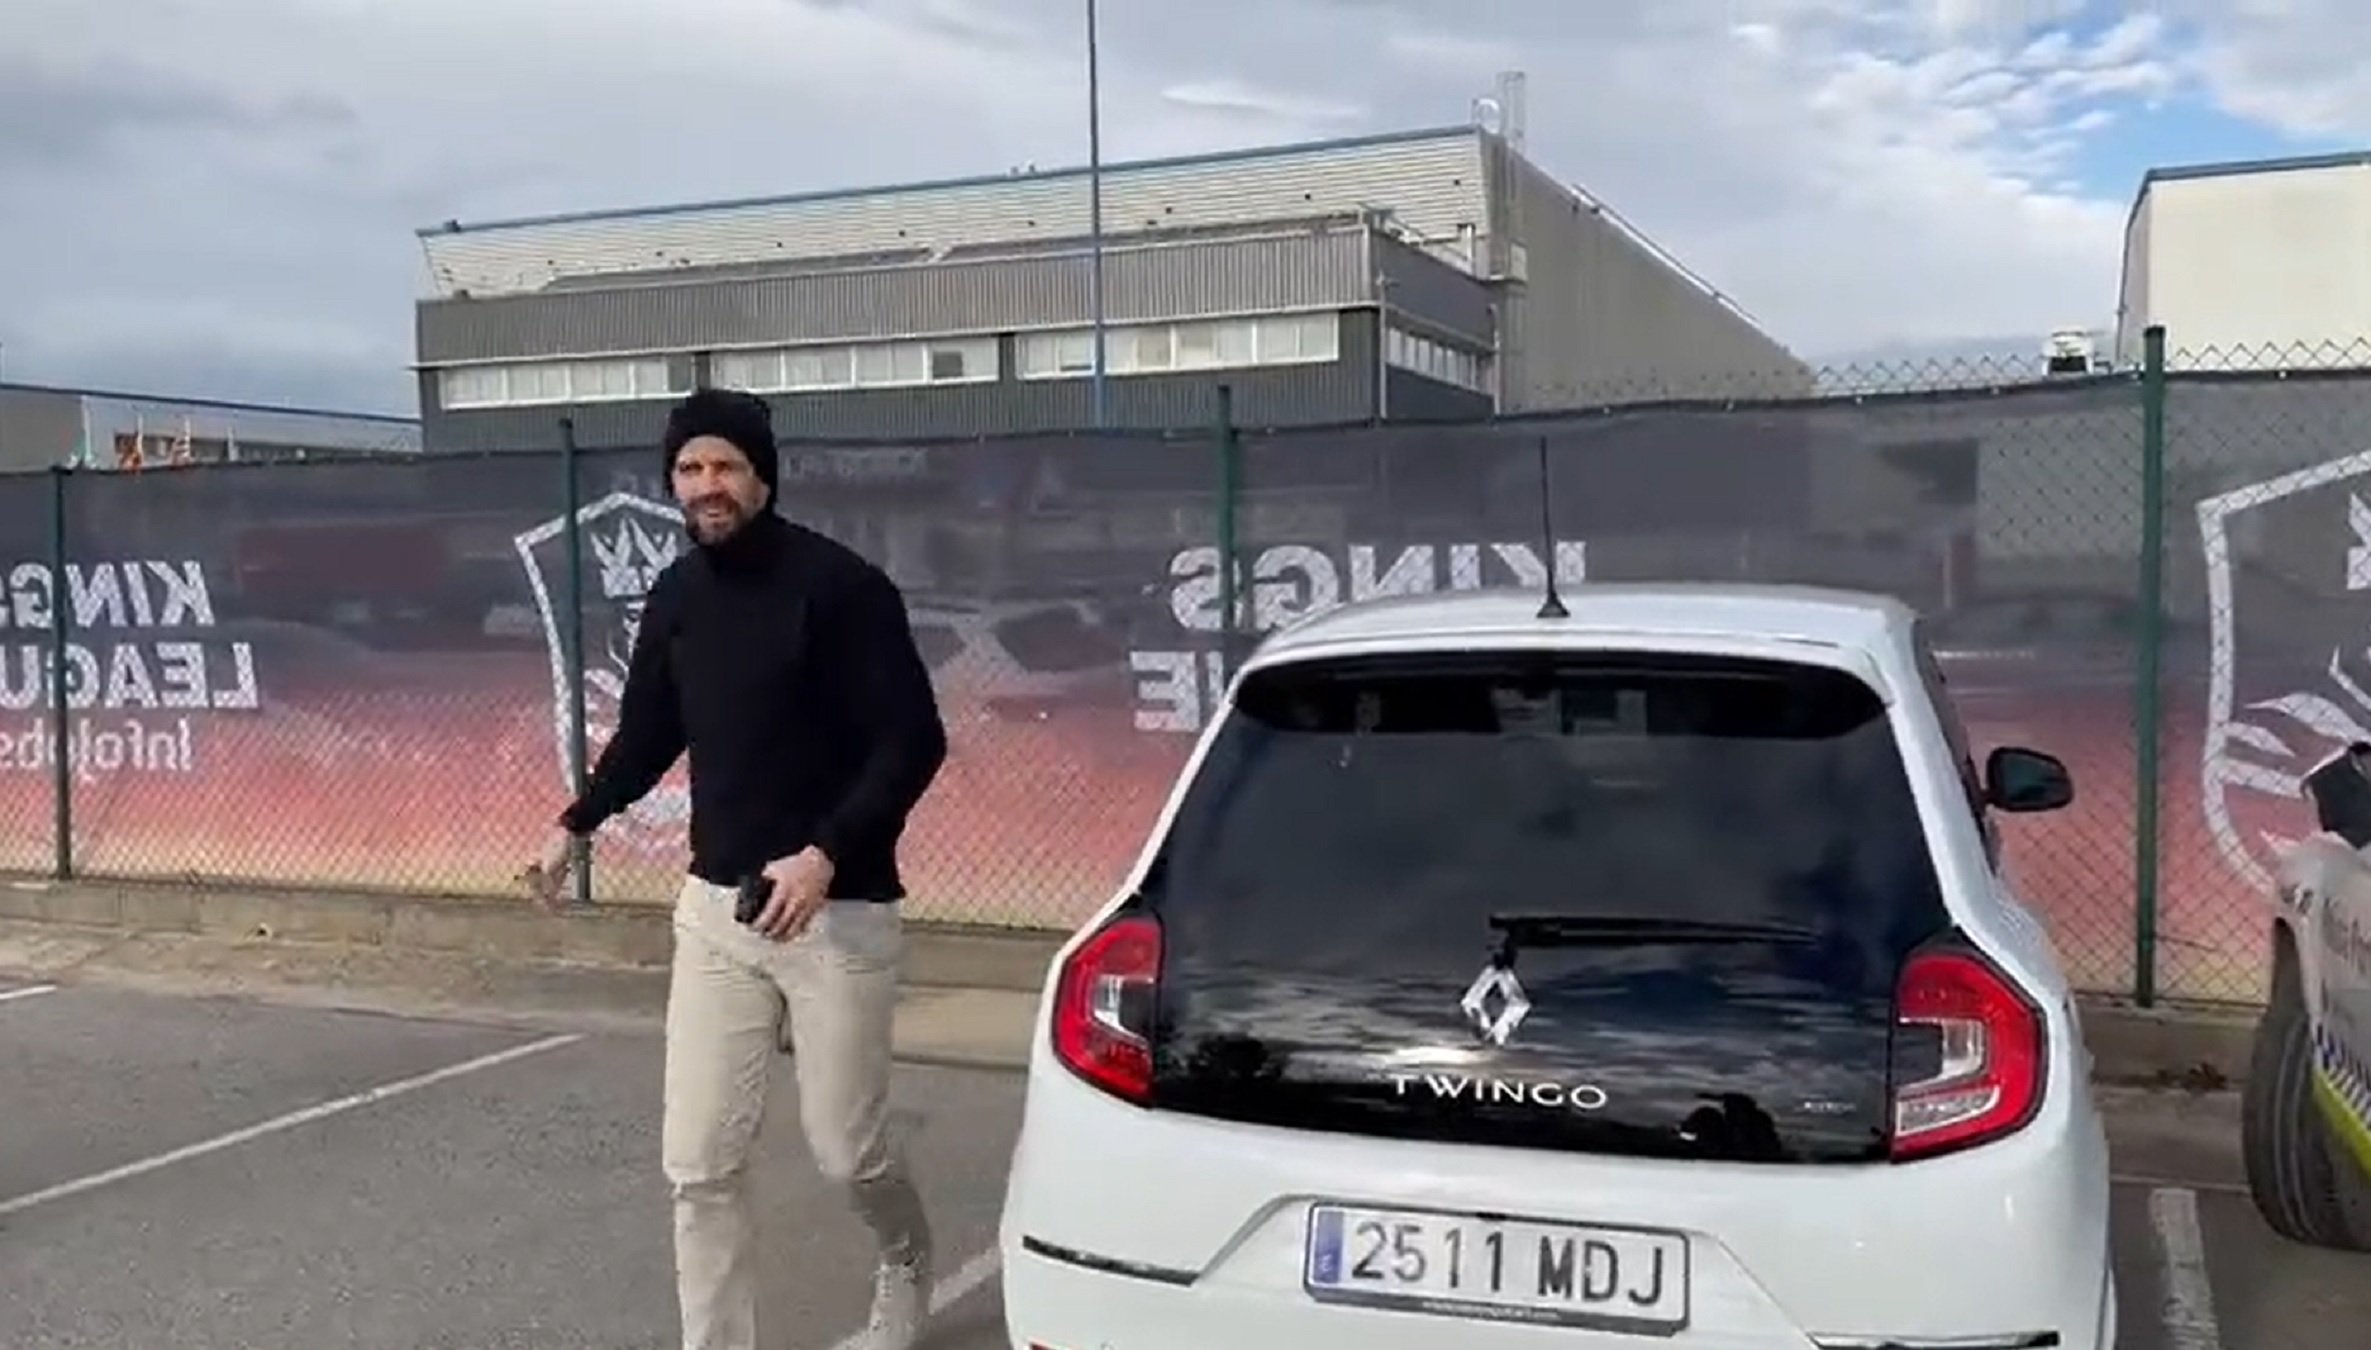 Shakira y Gerard Piqué muestran su odio en Barcelona y después Piqué conduce un Twingo